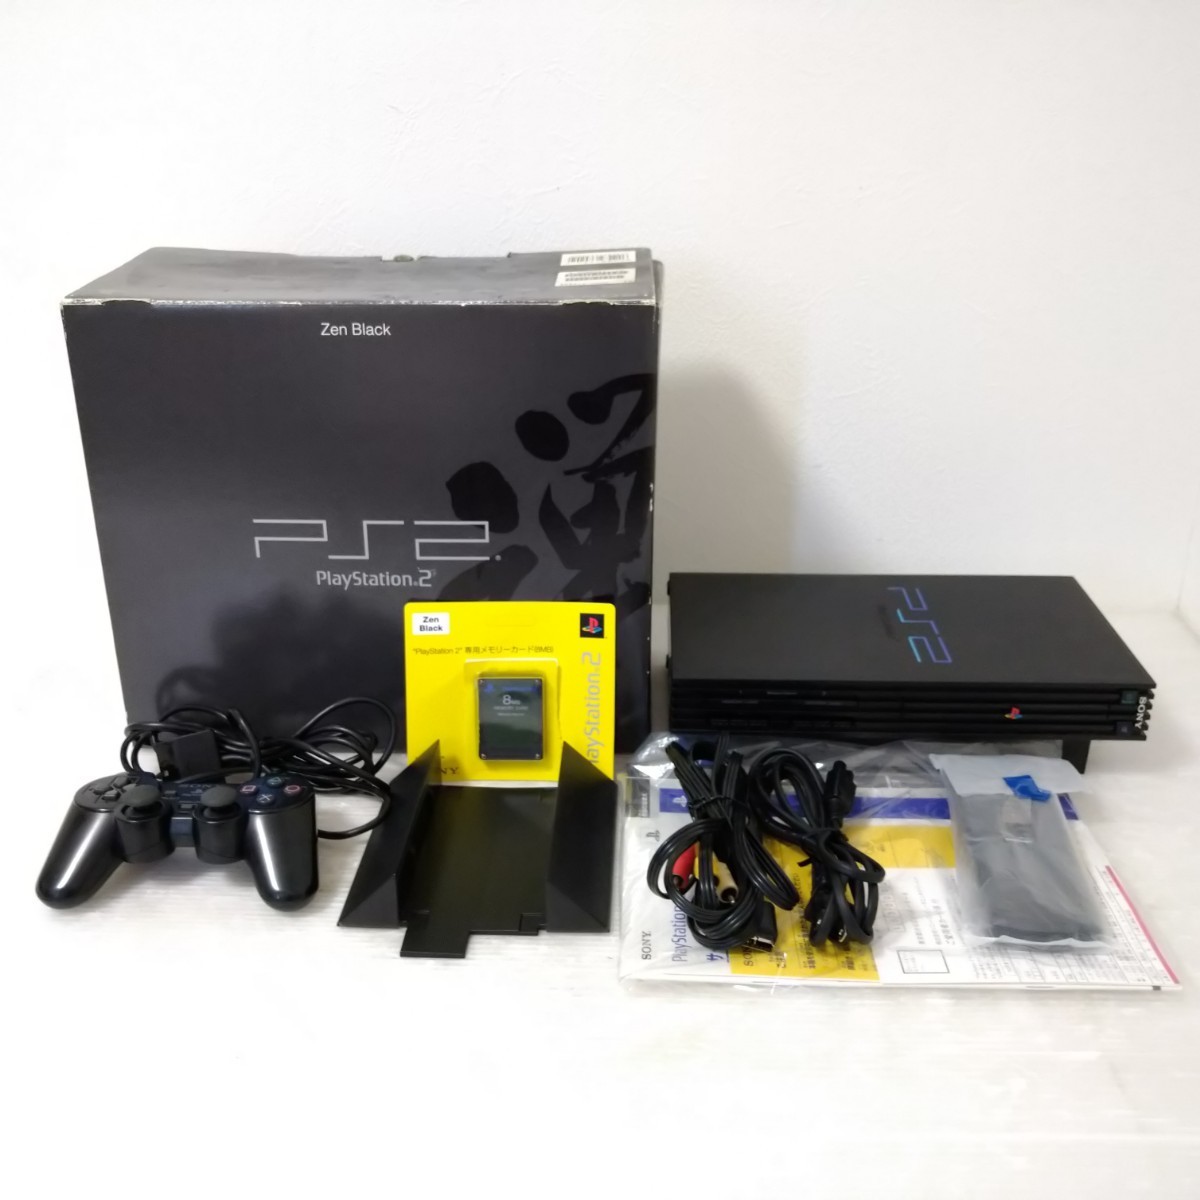 【美品】 SONY PS2 SCPH-37000B 禅 ブラック プレイステーション2 ゼンブラック PlayStation2 Zen Black プレステ2 レアカラー 限定 動作品